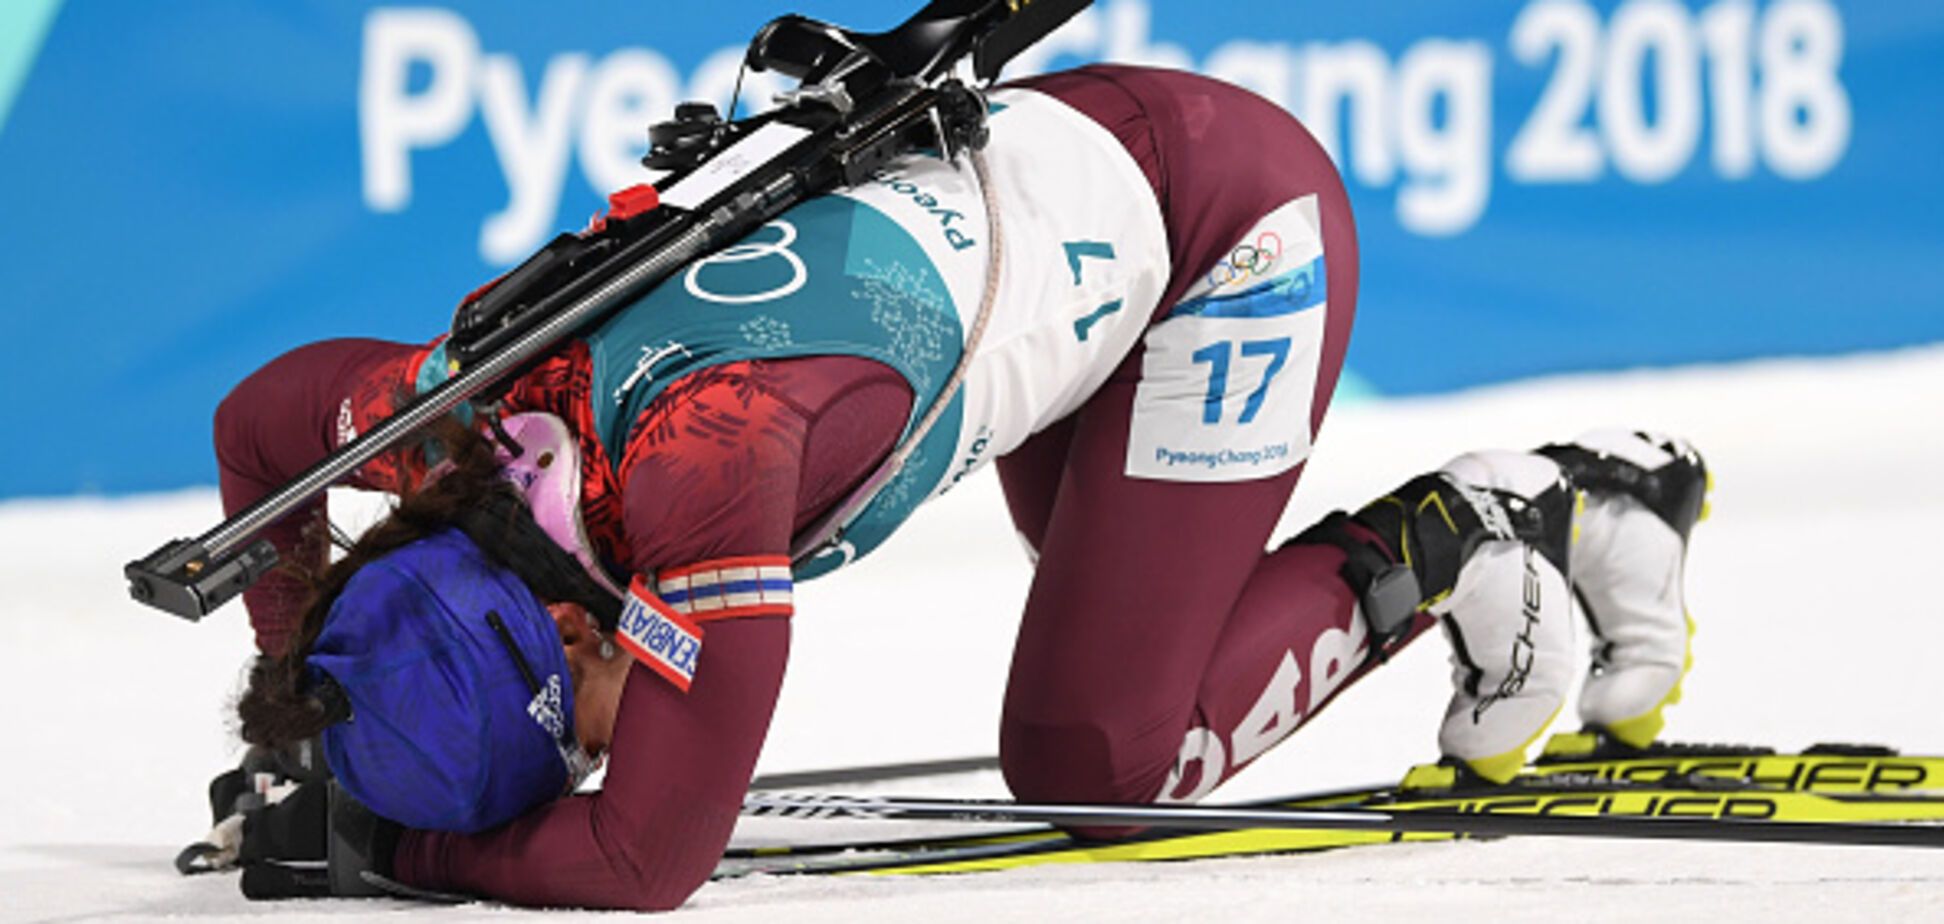 'Обидно!' Российская биатлонистка пожаловалась на наплевательское отношение на Играх в Пхенчхане